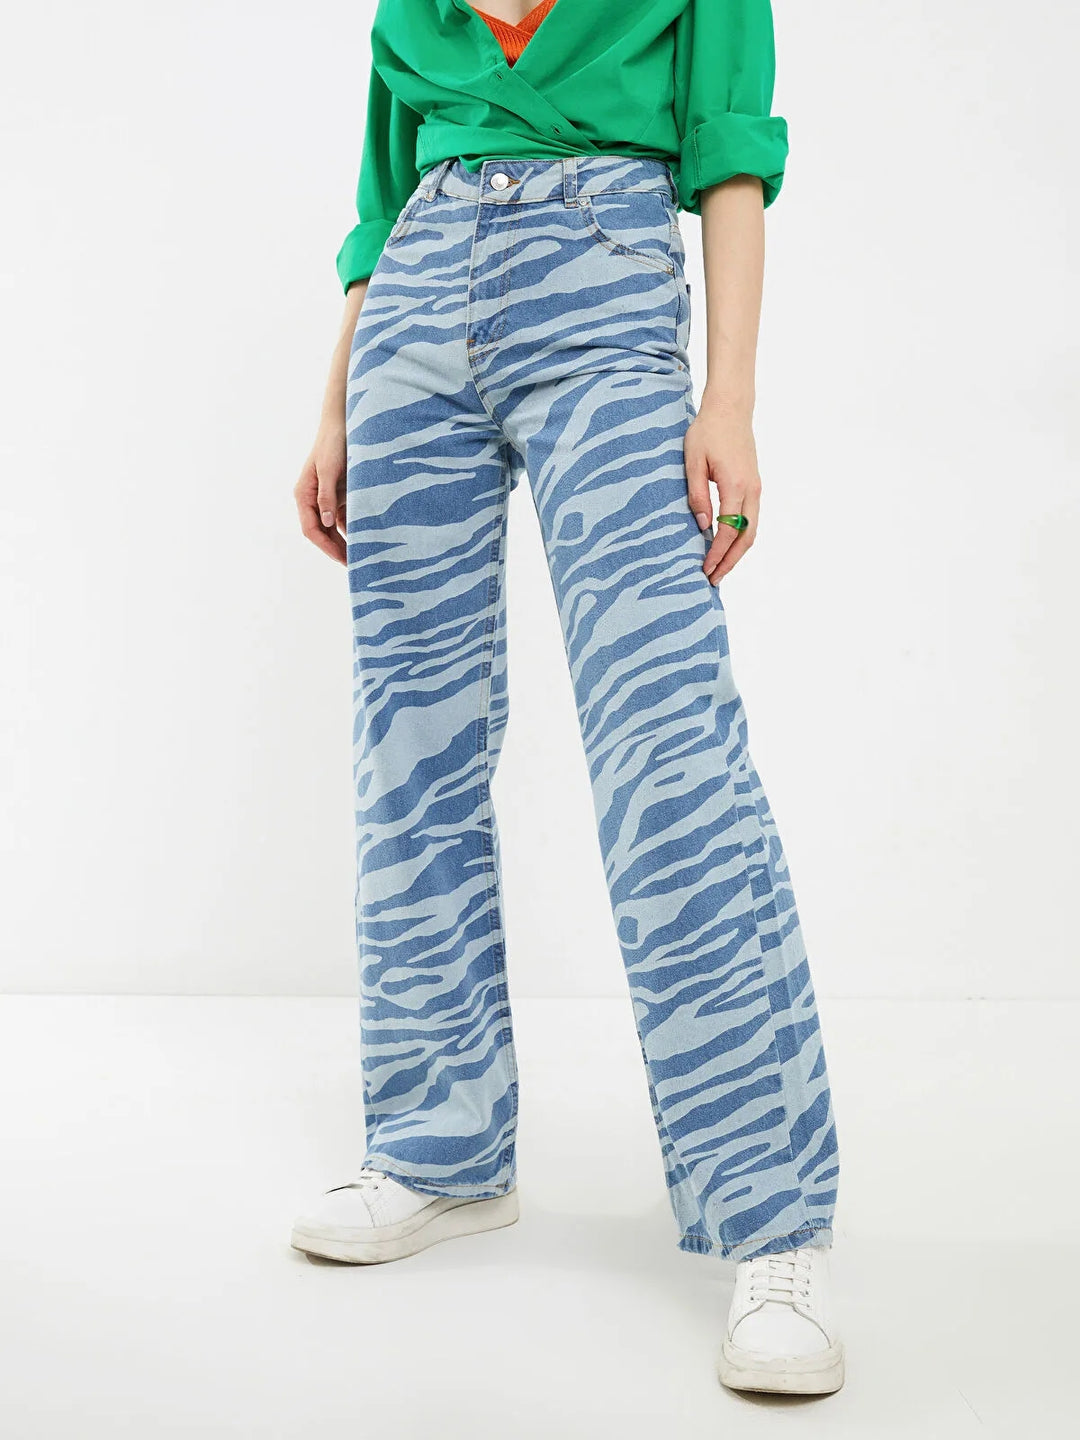 Standard Fit Patterned Pocket Detailed Women Jean Trousers